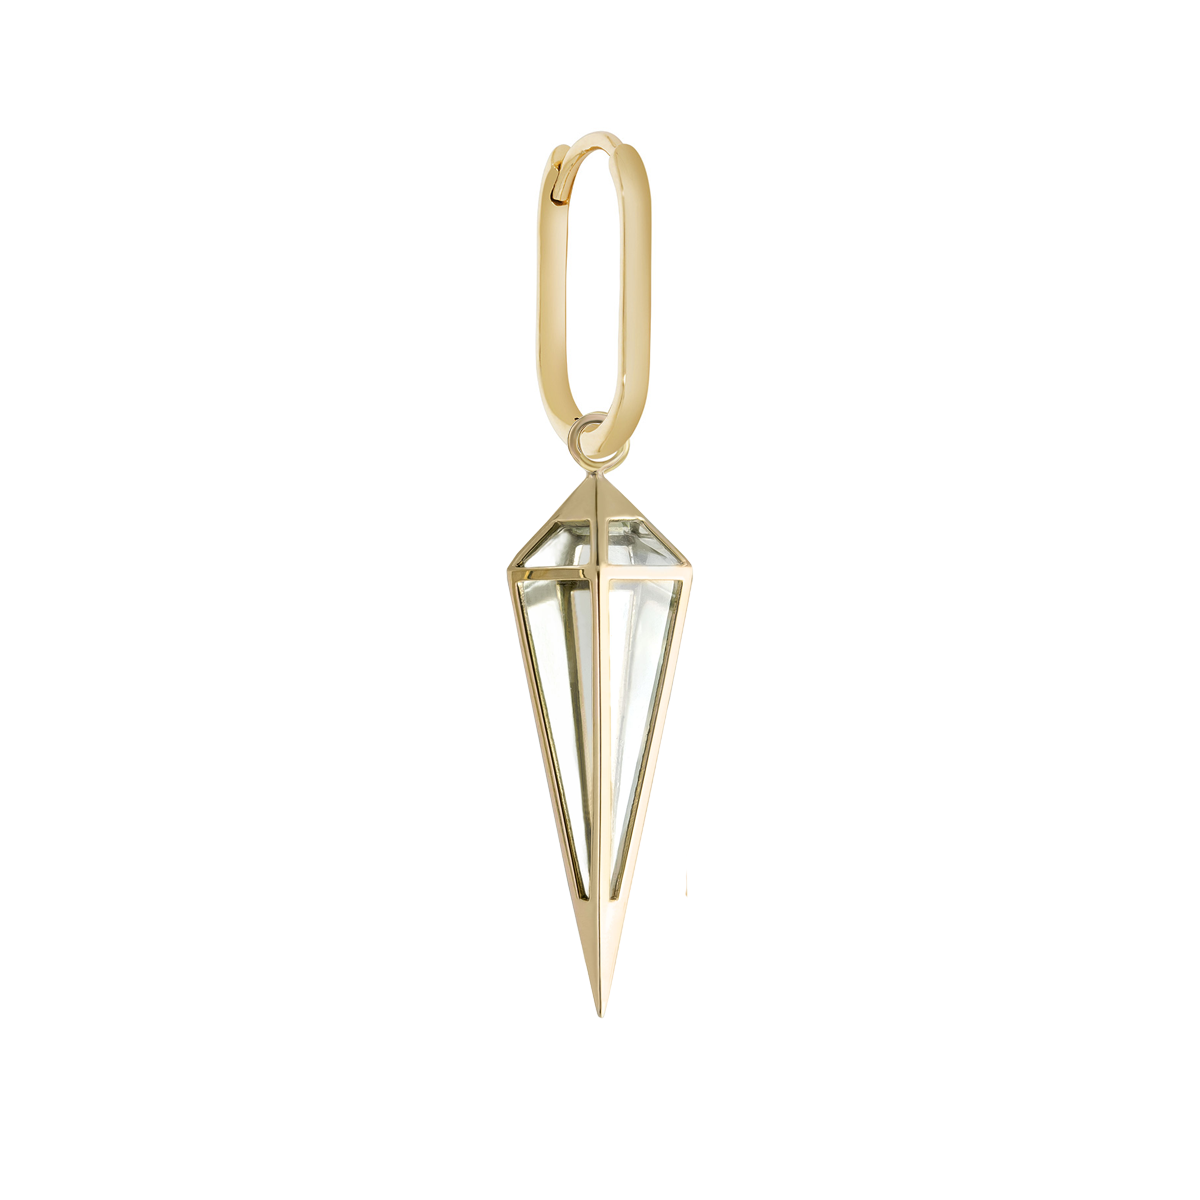 Midi Oval Crystal Pendulum Clicker